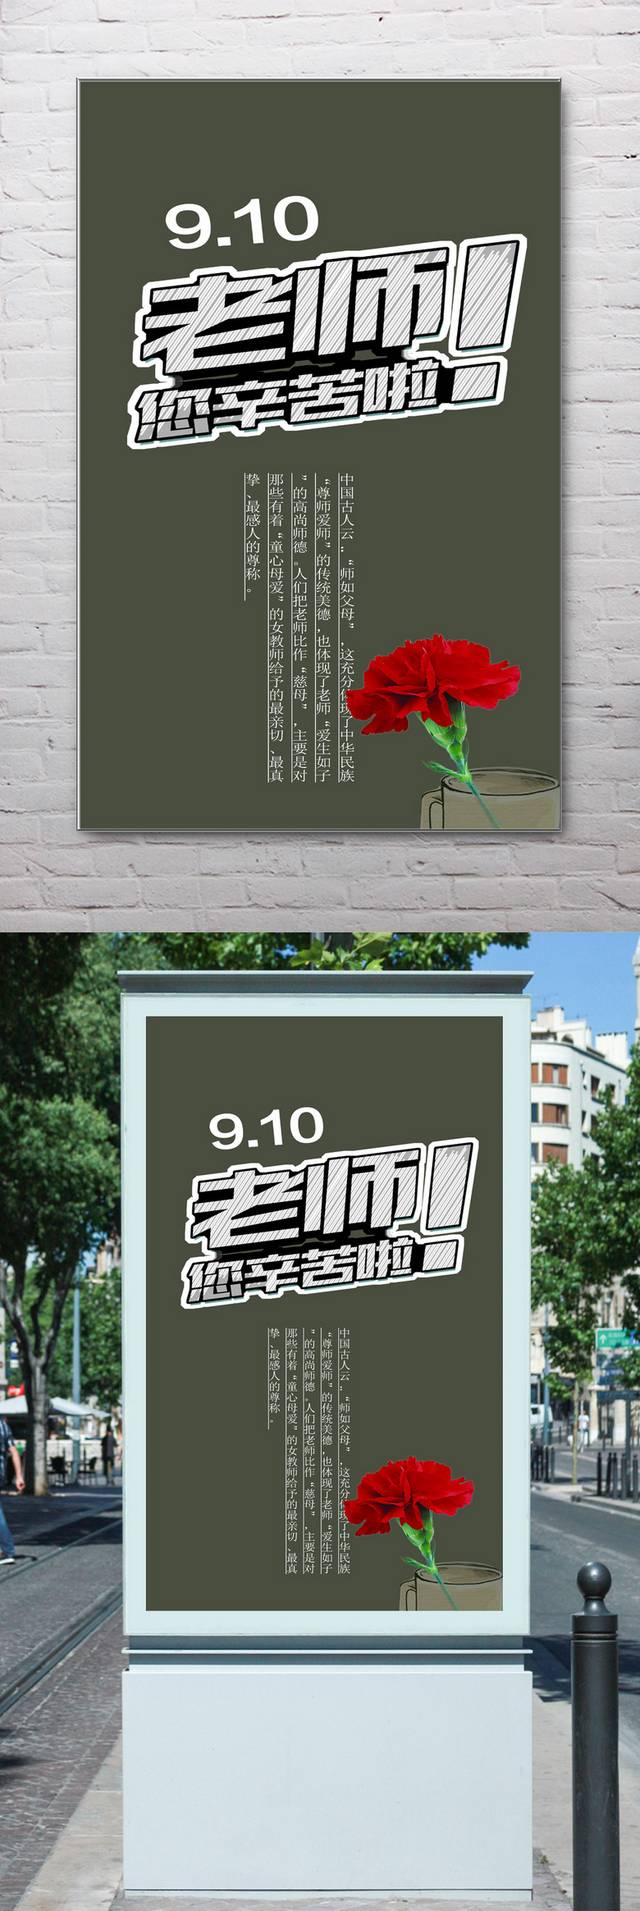 9.10教师节海报